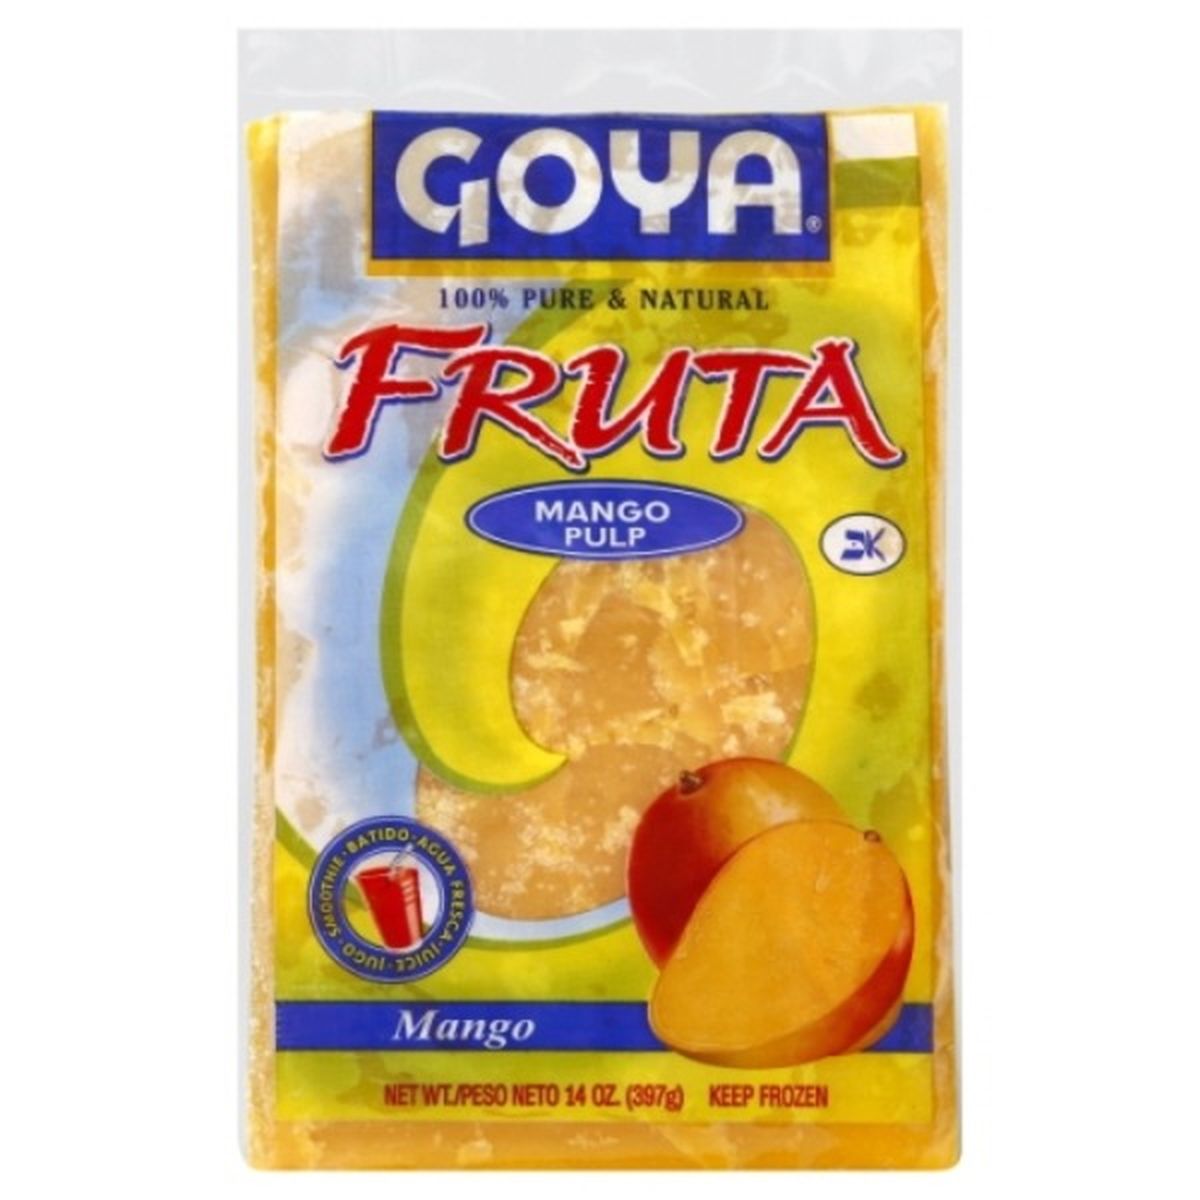 Calories in Goya Fruta, Mango Pulp